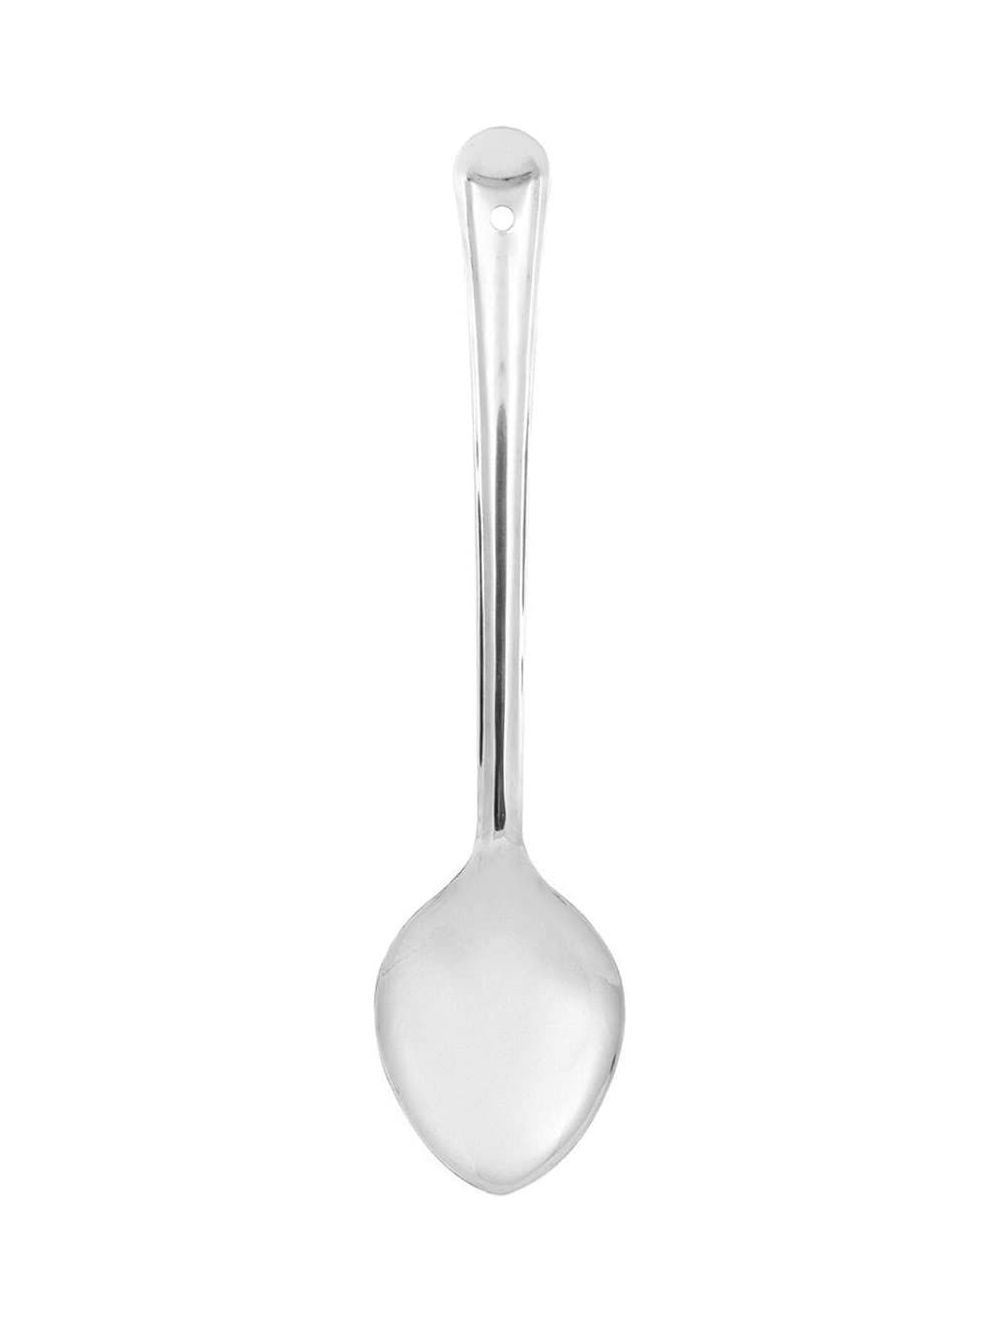 Raj 9 cm Basting Spoon-Bs0007 - Silver